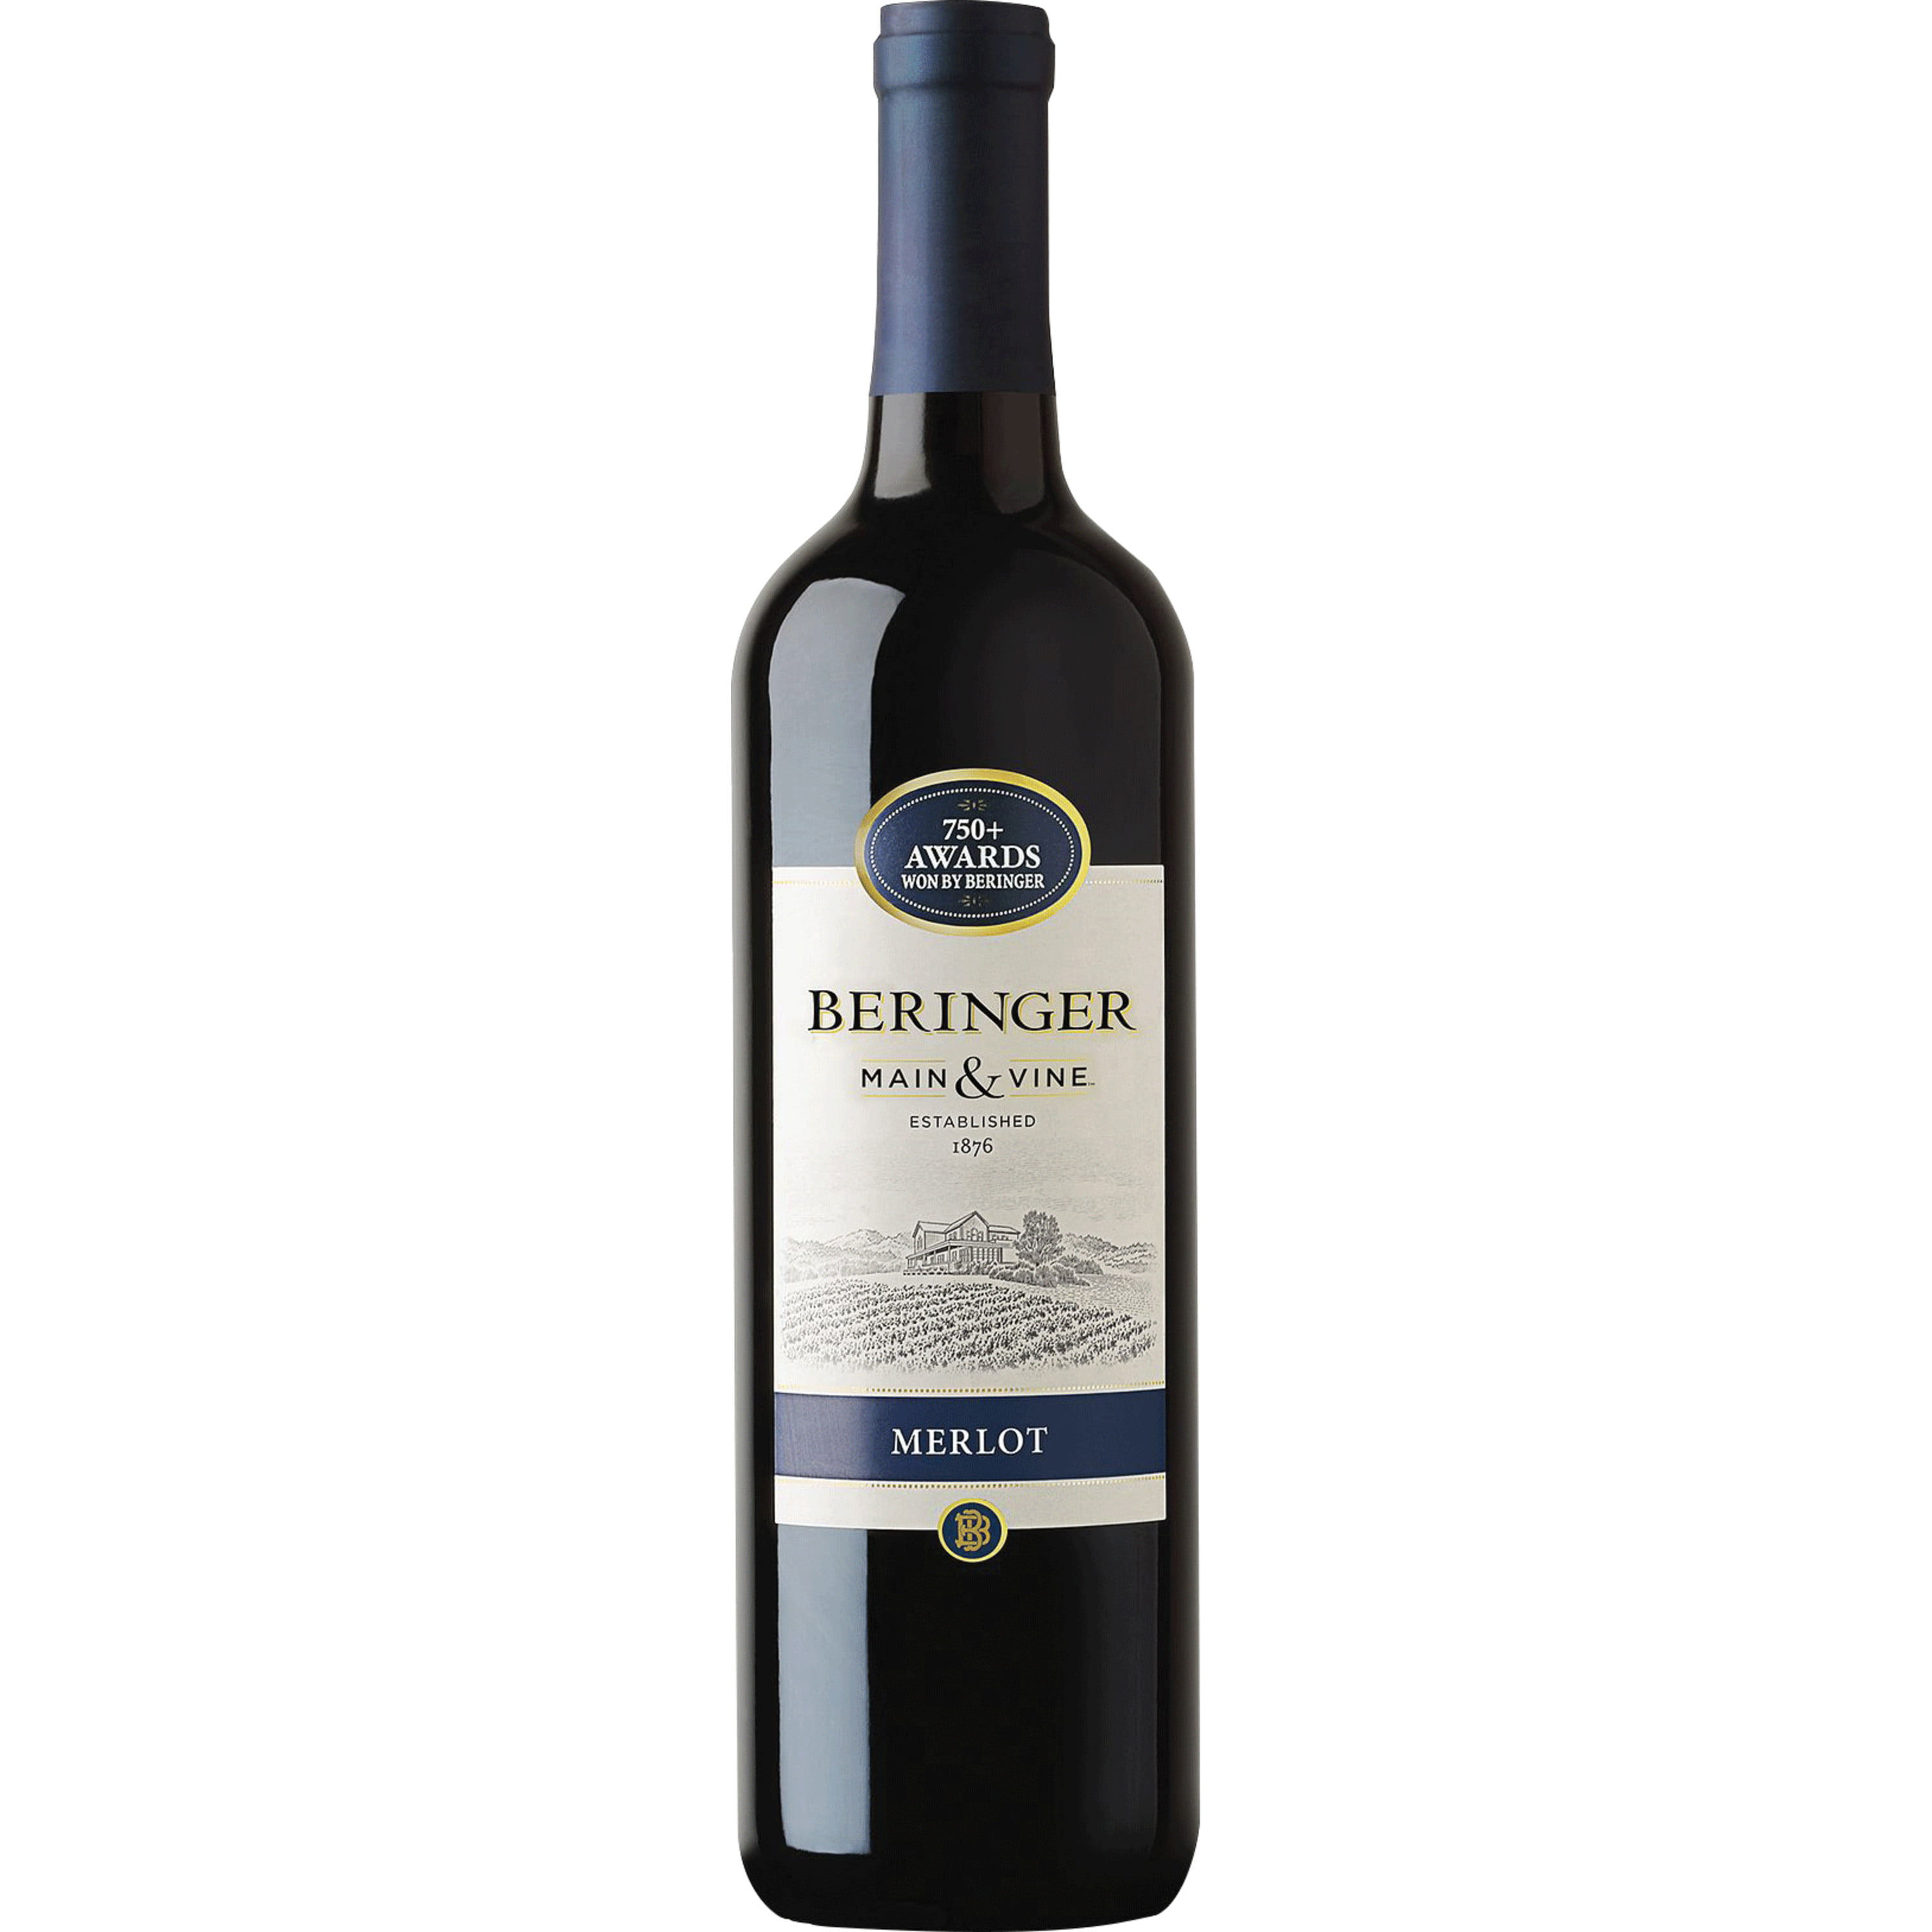 Beringer Main & Vine™ Merlot Red Wine - 750ml, California